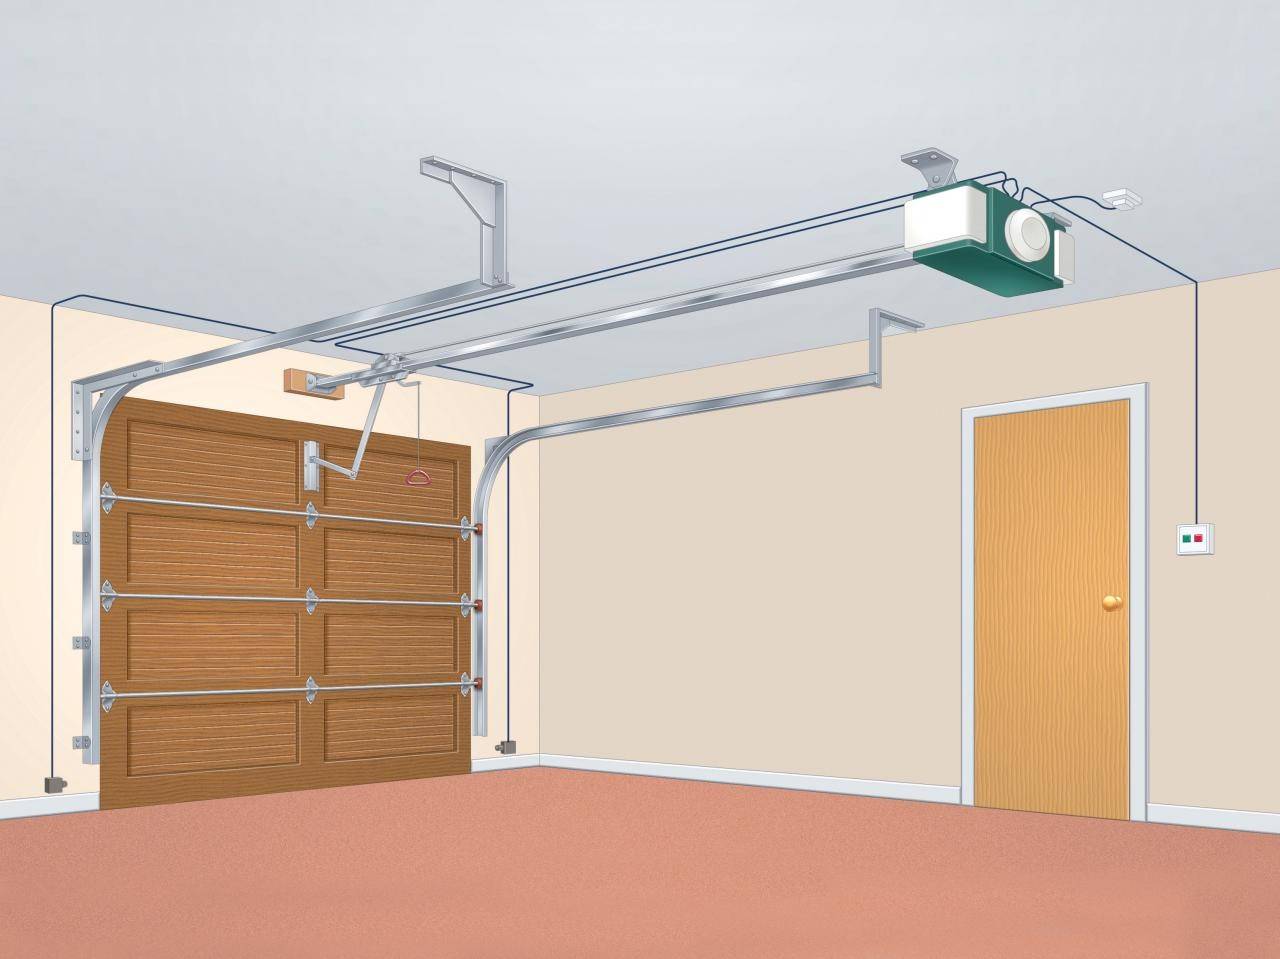 Секционные ворота: виды и размеры конструкций для гаража, как выбрать